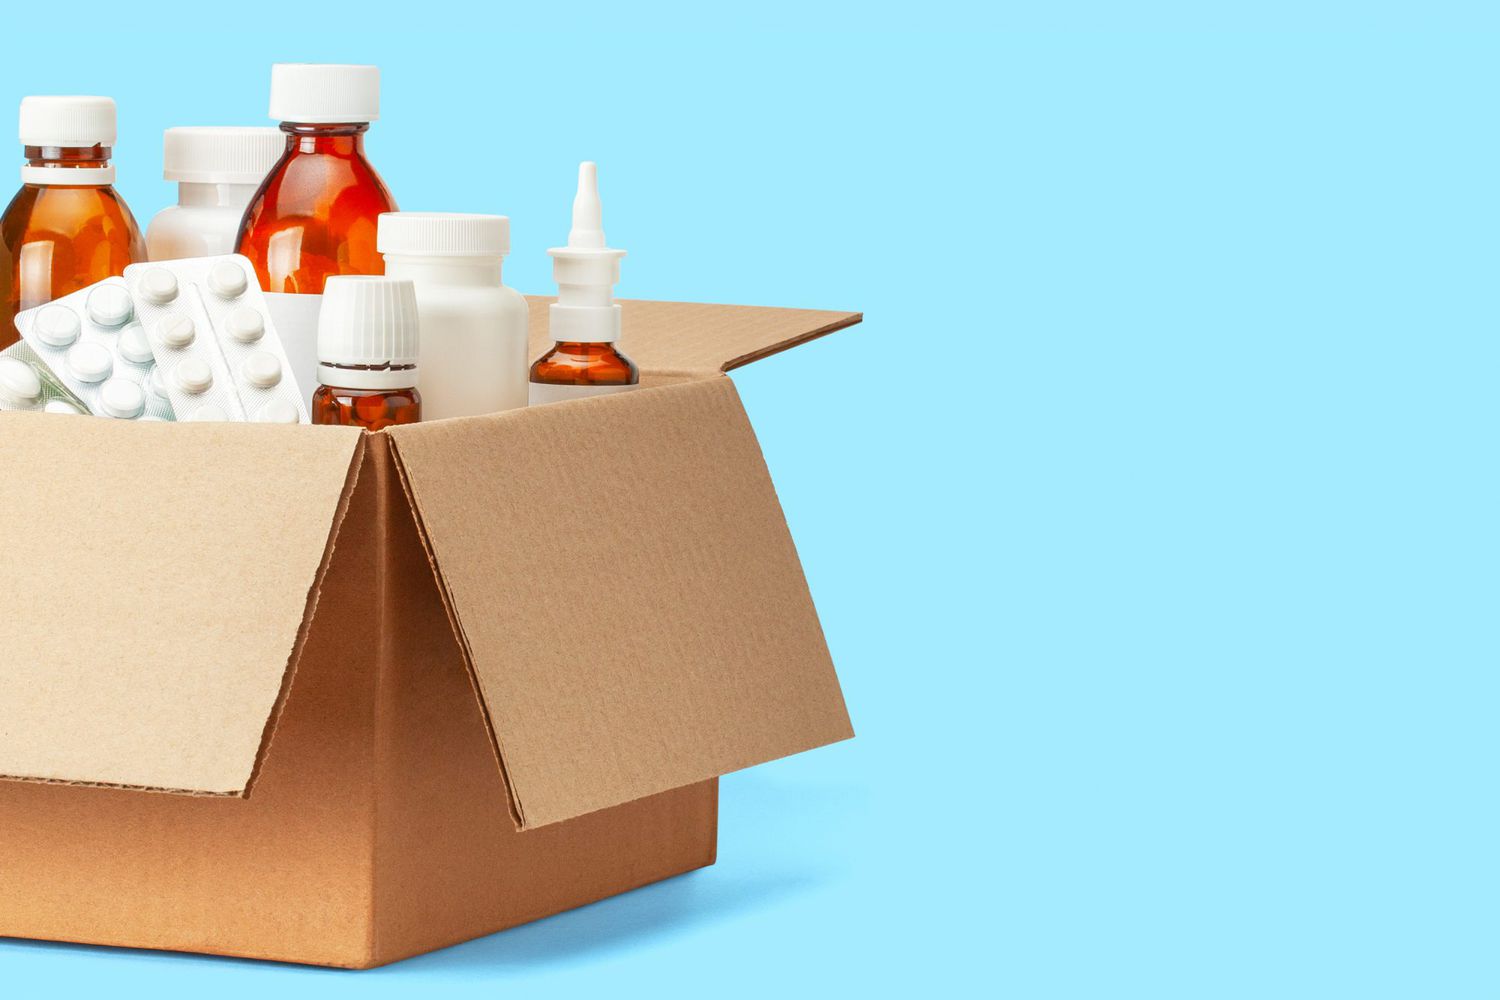 Prescription Drug Delivery Services: box of prescriptions